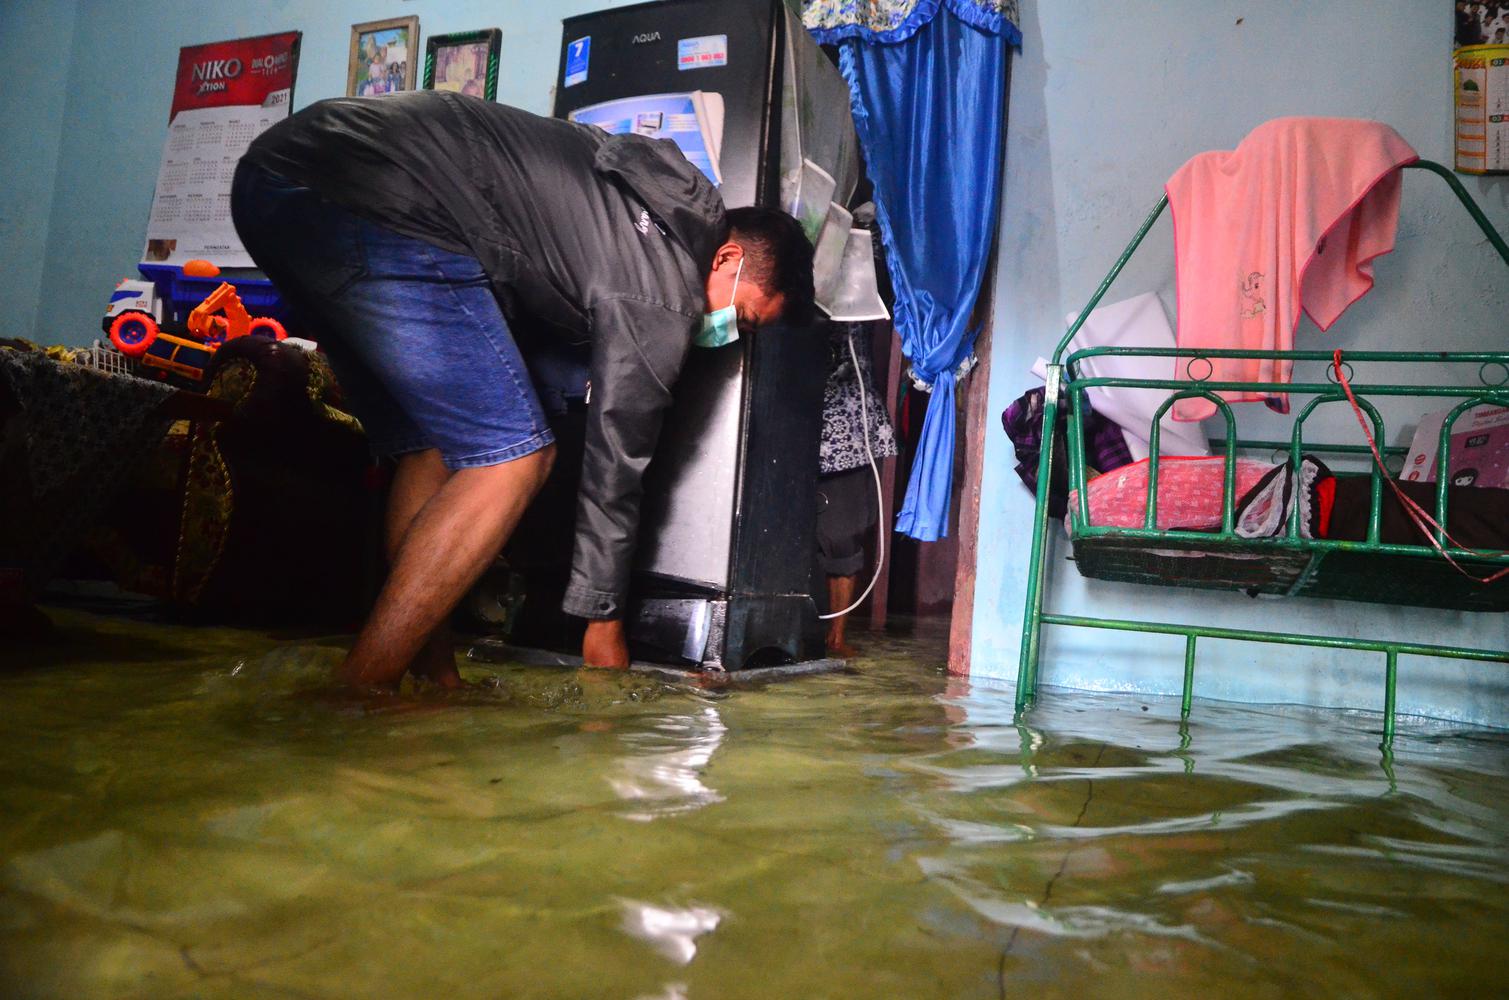 Warga menyelamatkan barang di rumah yang terendam banjir di Desa Jati Wetan, Kudus, Jawa Tengah, Kamis (10/12/2020). Akibat intensitas hujan yang tinggi sebanyak 75 rumah di wilayah itu terendam banjir dengan ketinggian 15-60 centimeter sejak dua hari terakhir.